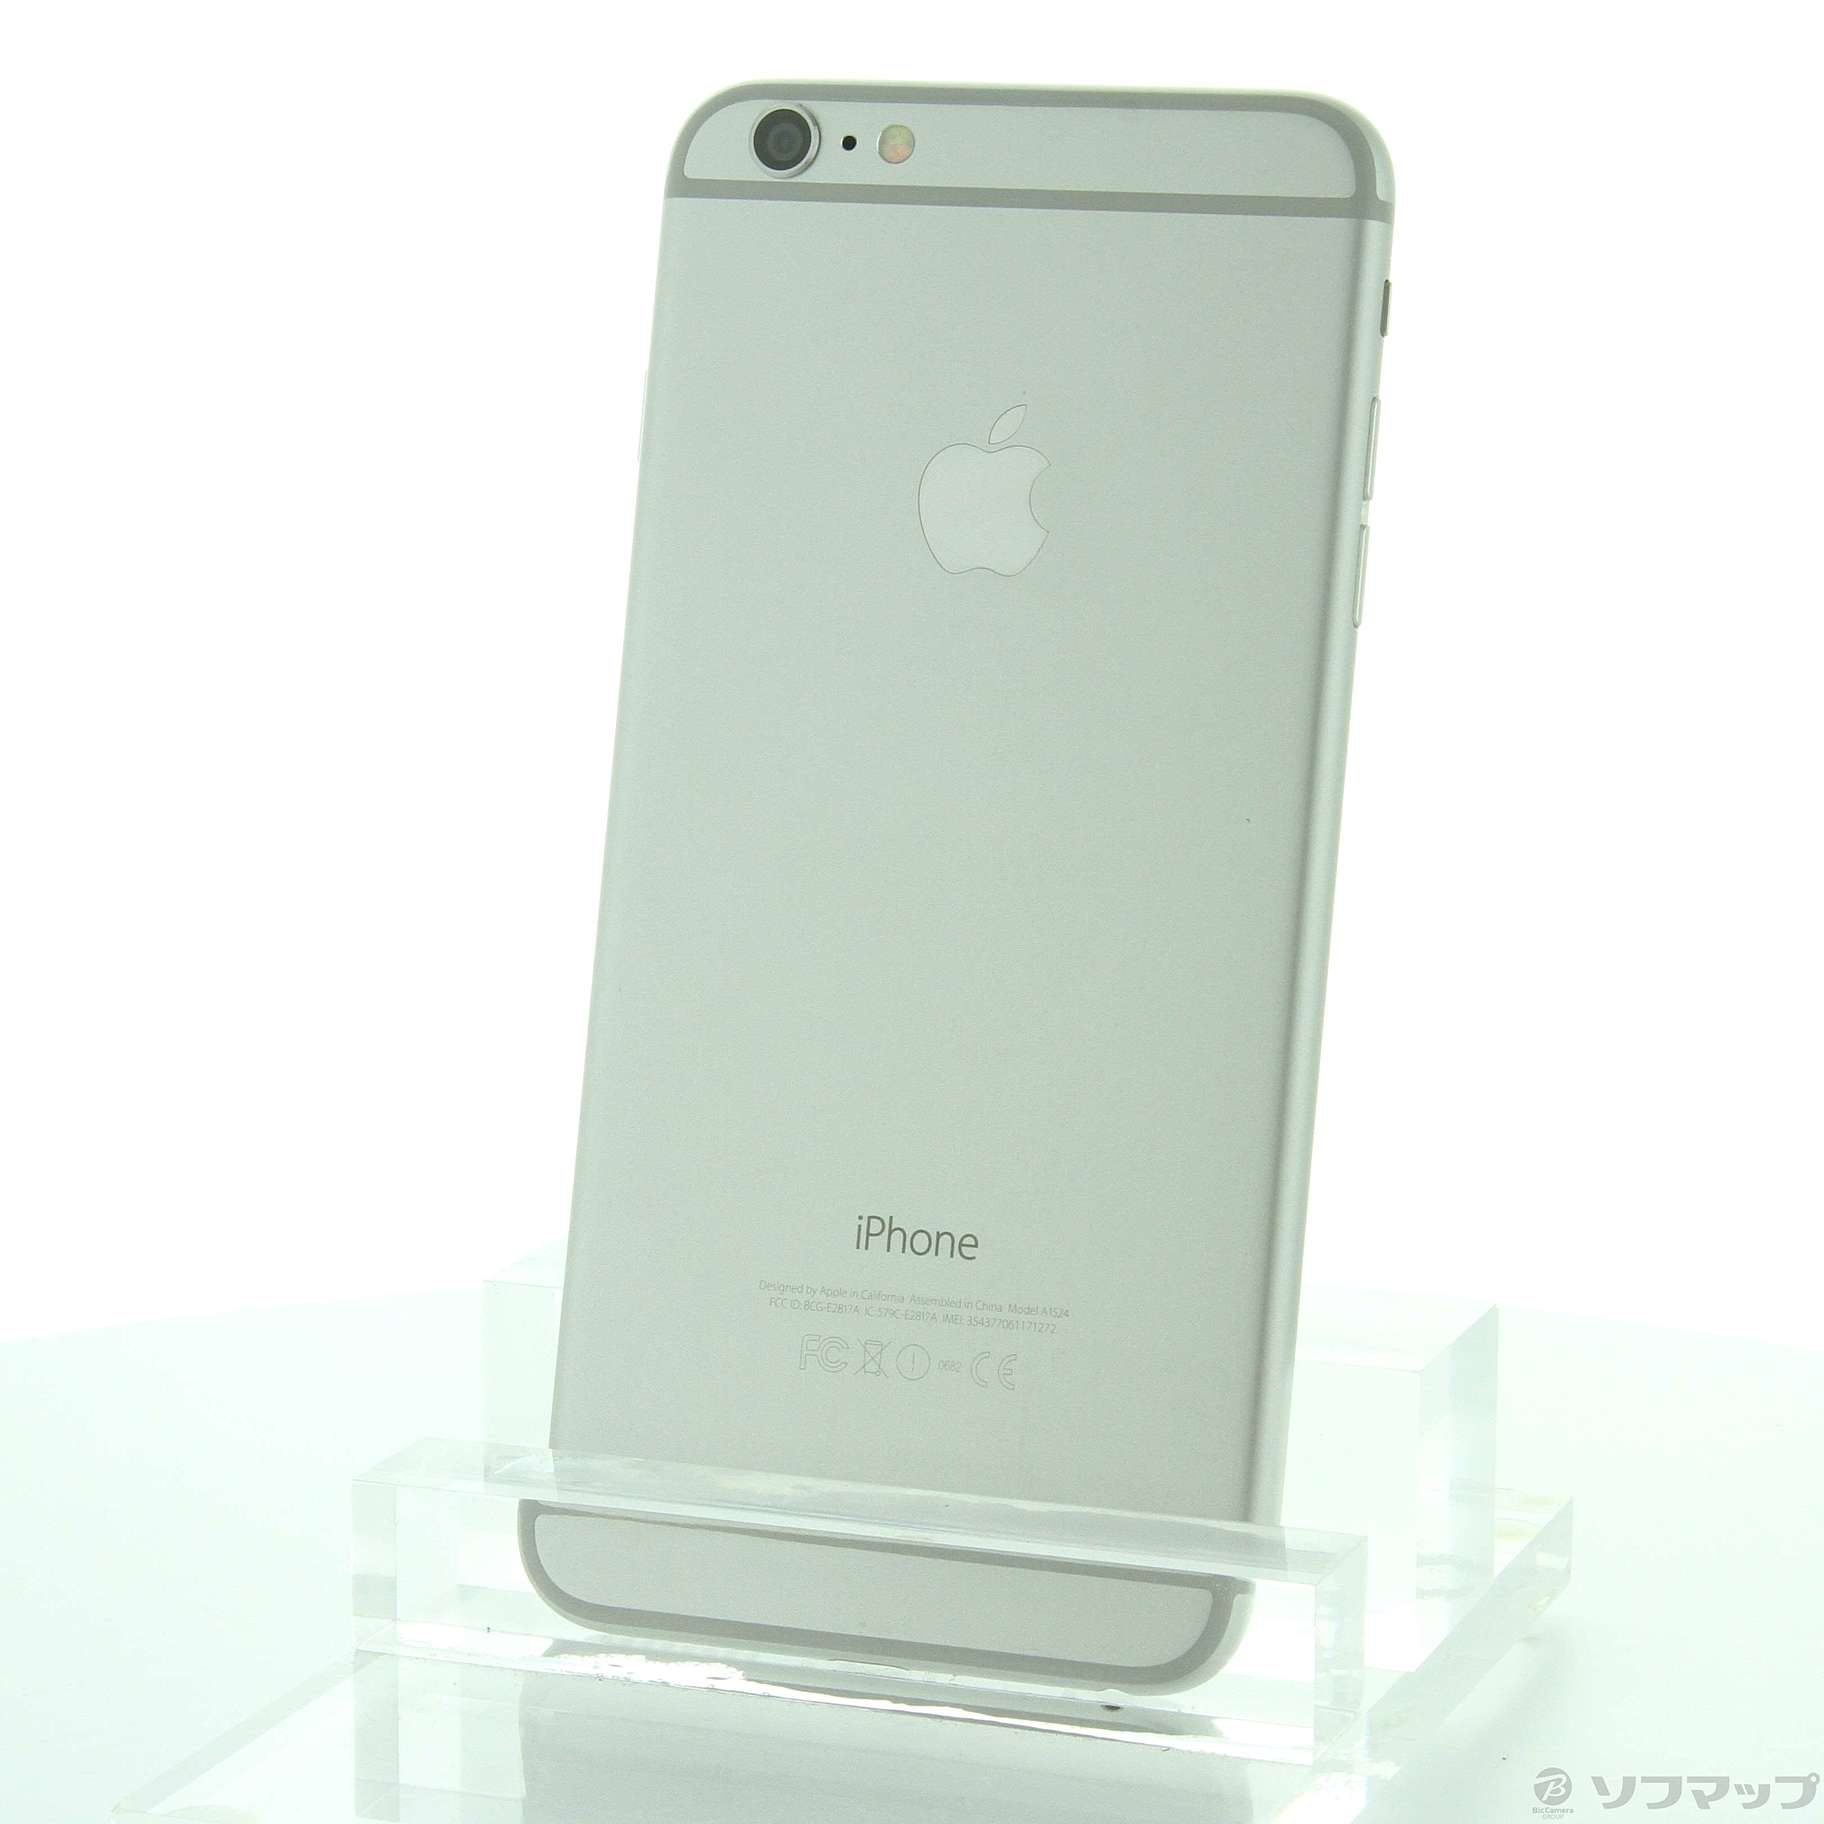 iPhone 6 Silver 128 GB docomo